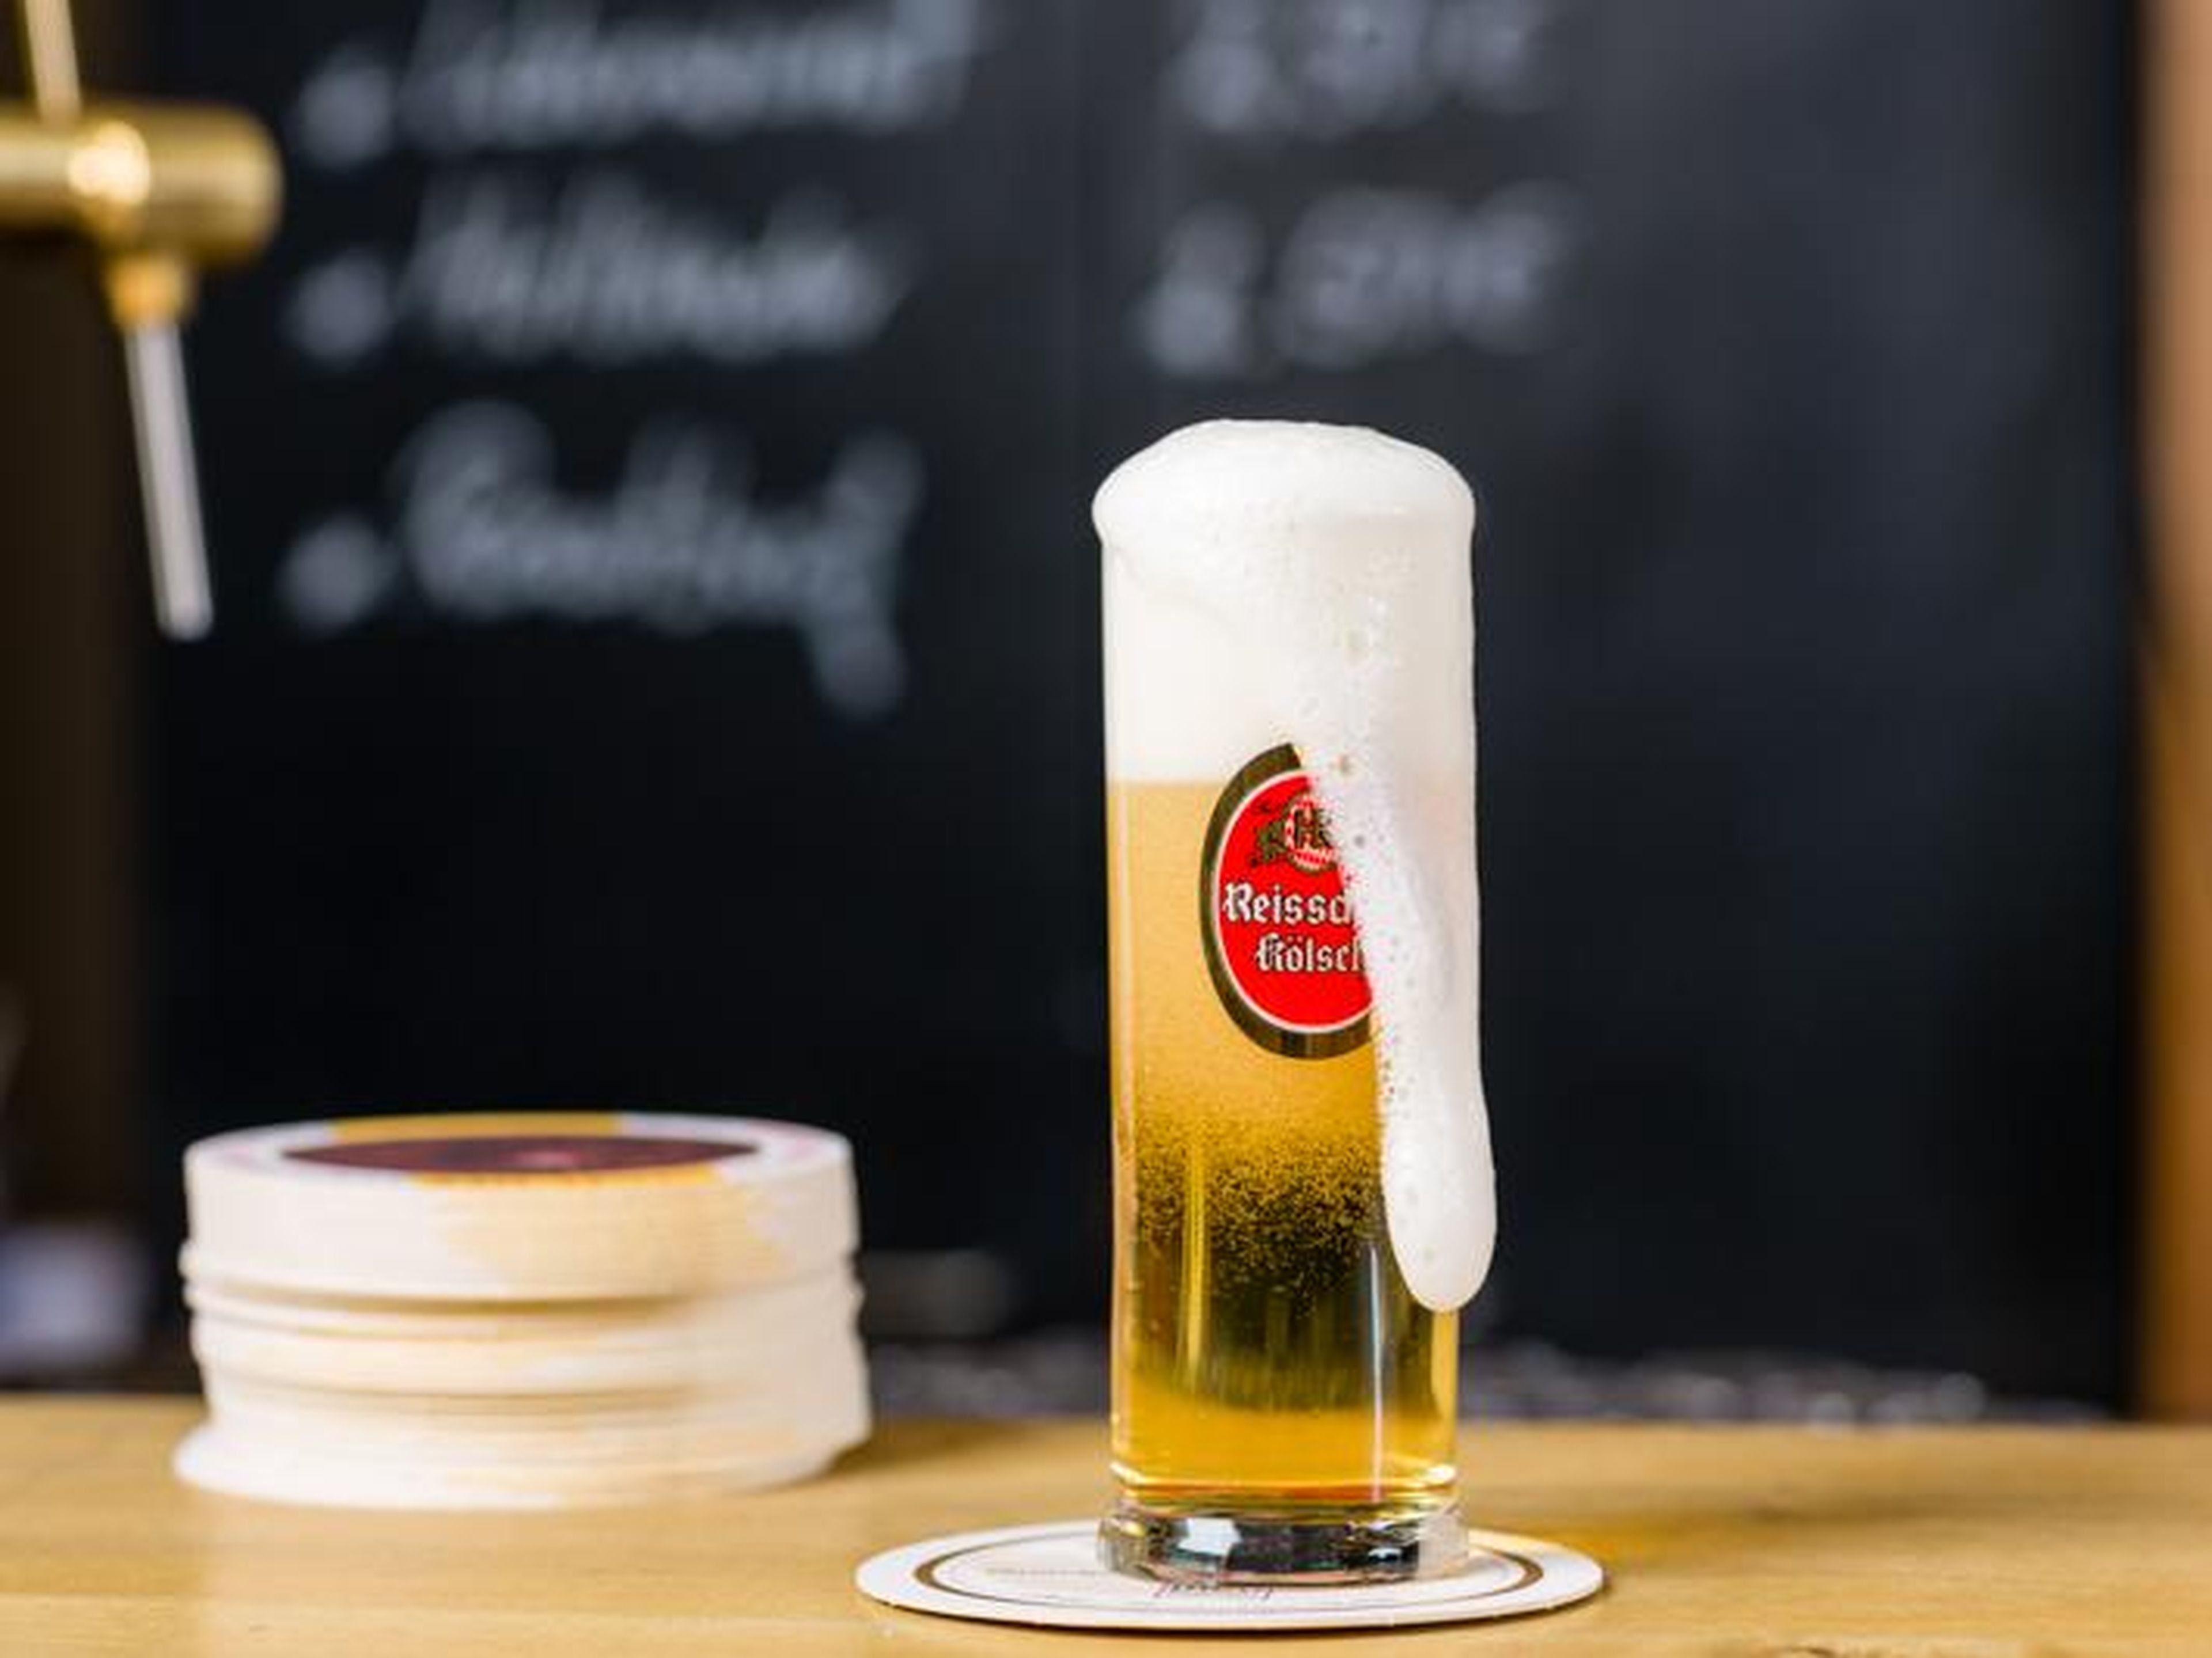 La cerveza Kölsch de Alemania es dorada y refrescante.